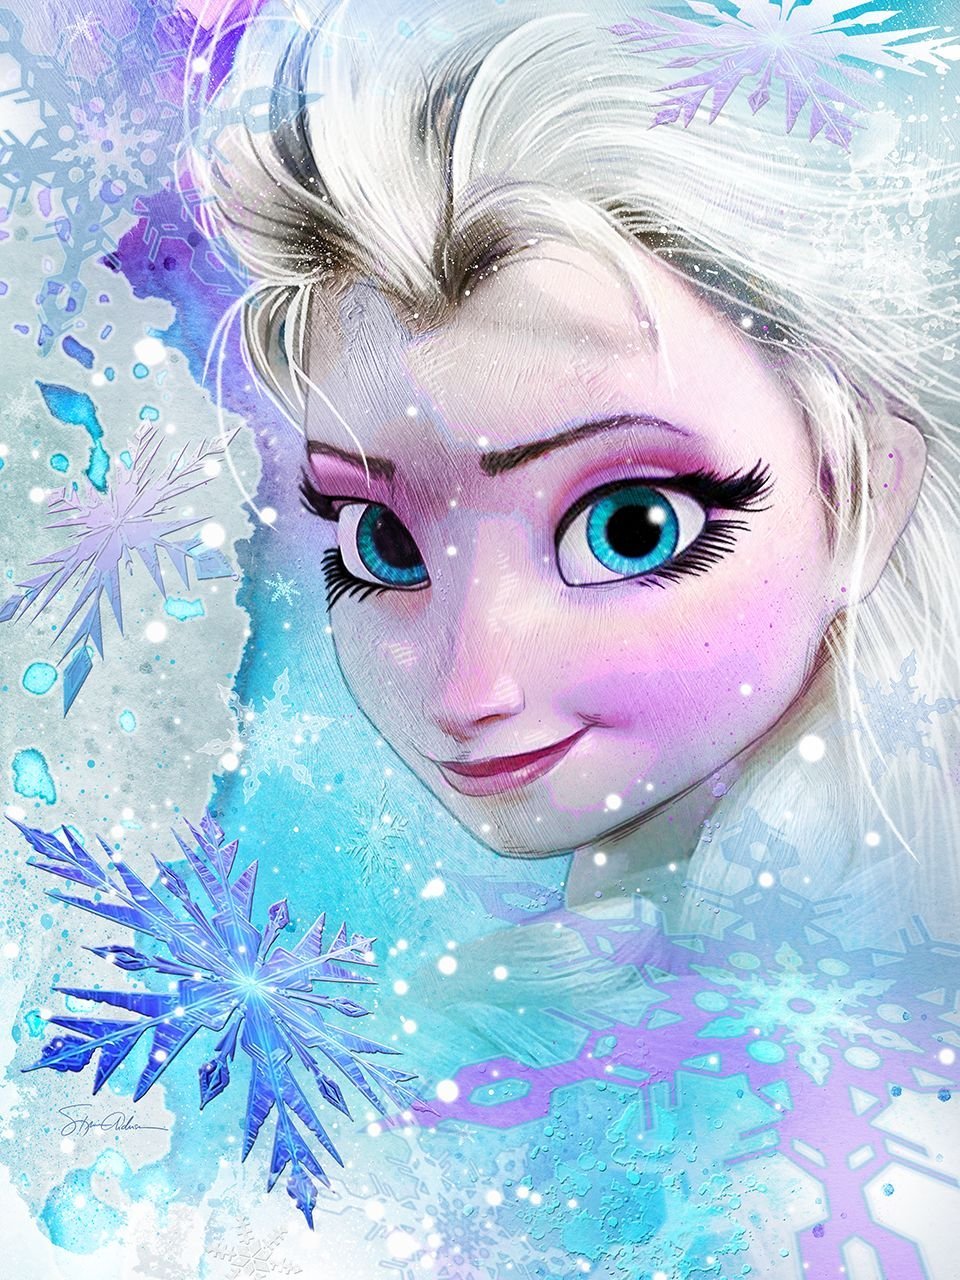 Frozen 10